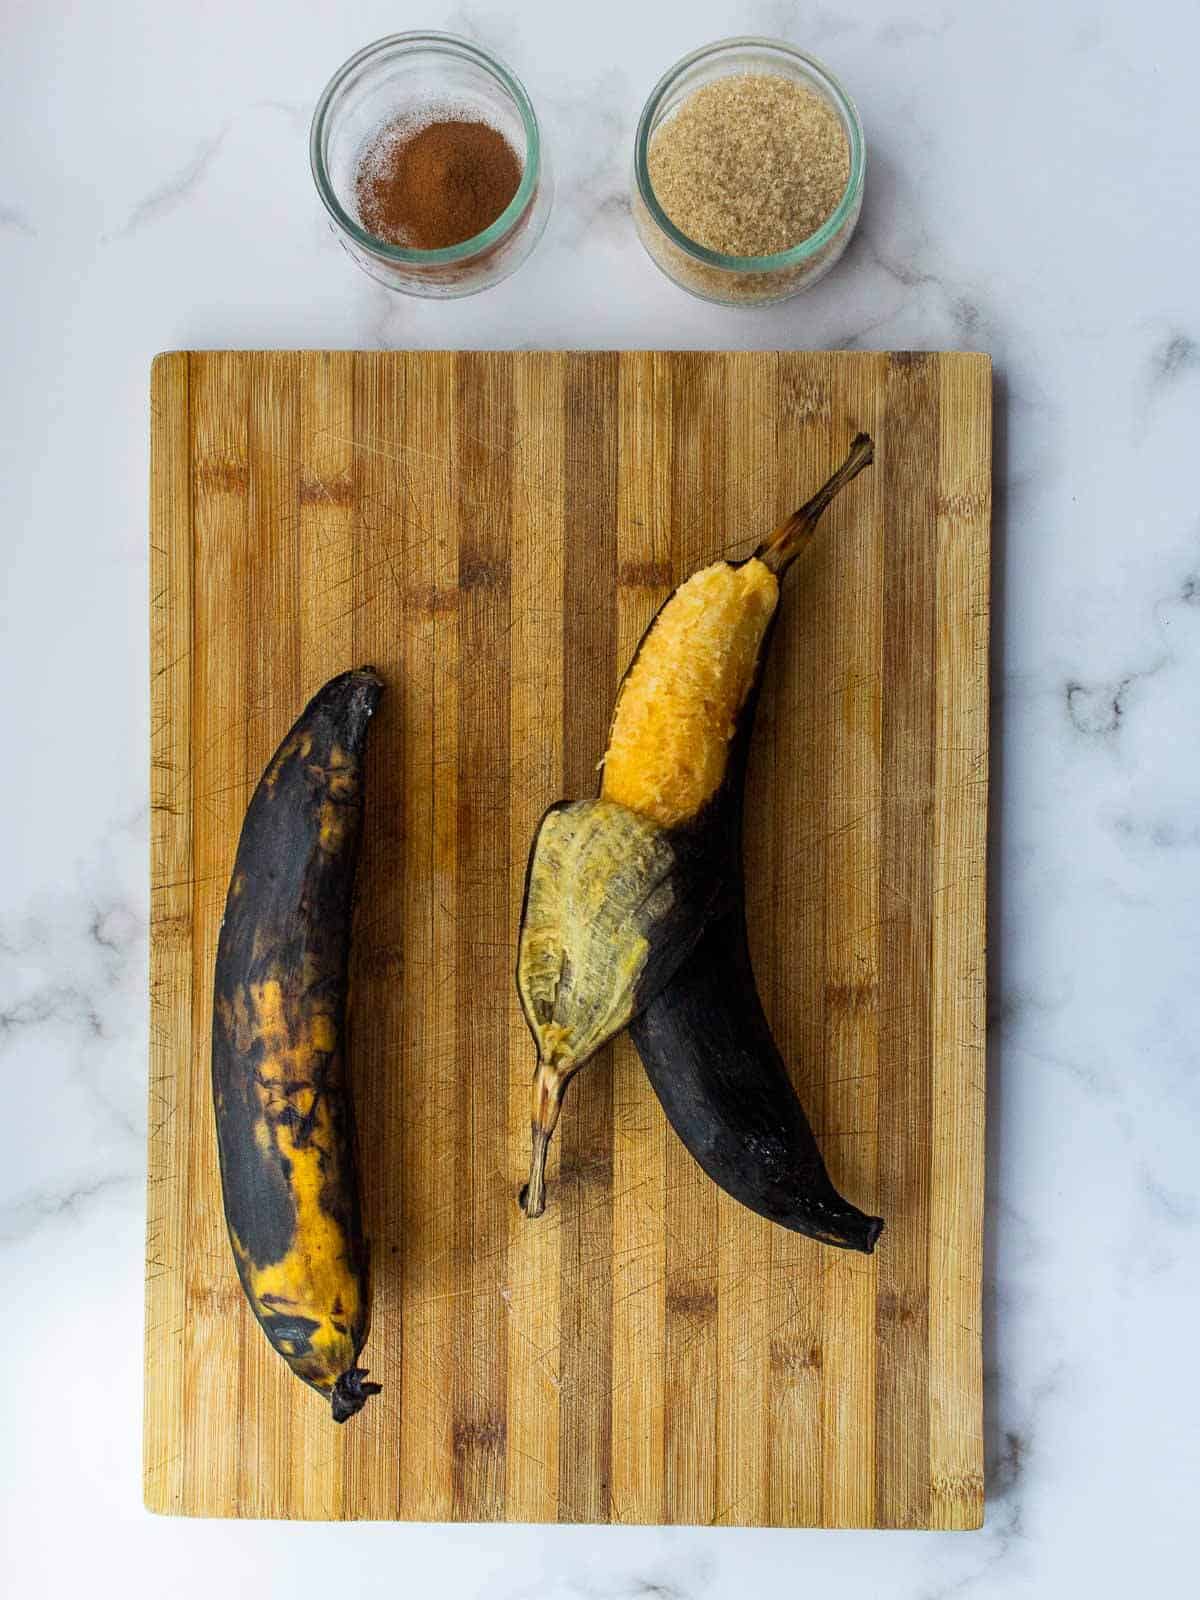 ingredientes para hacer plátanos en tentación.